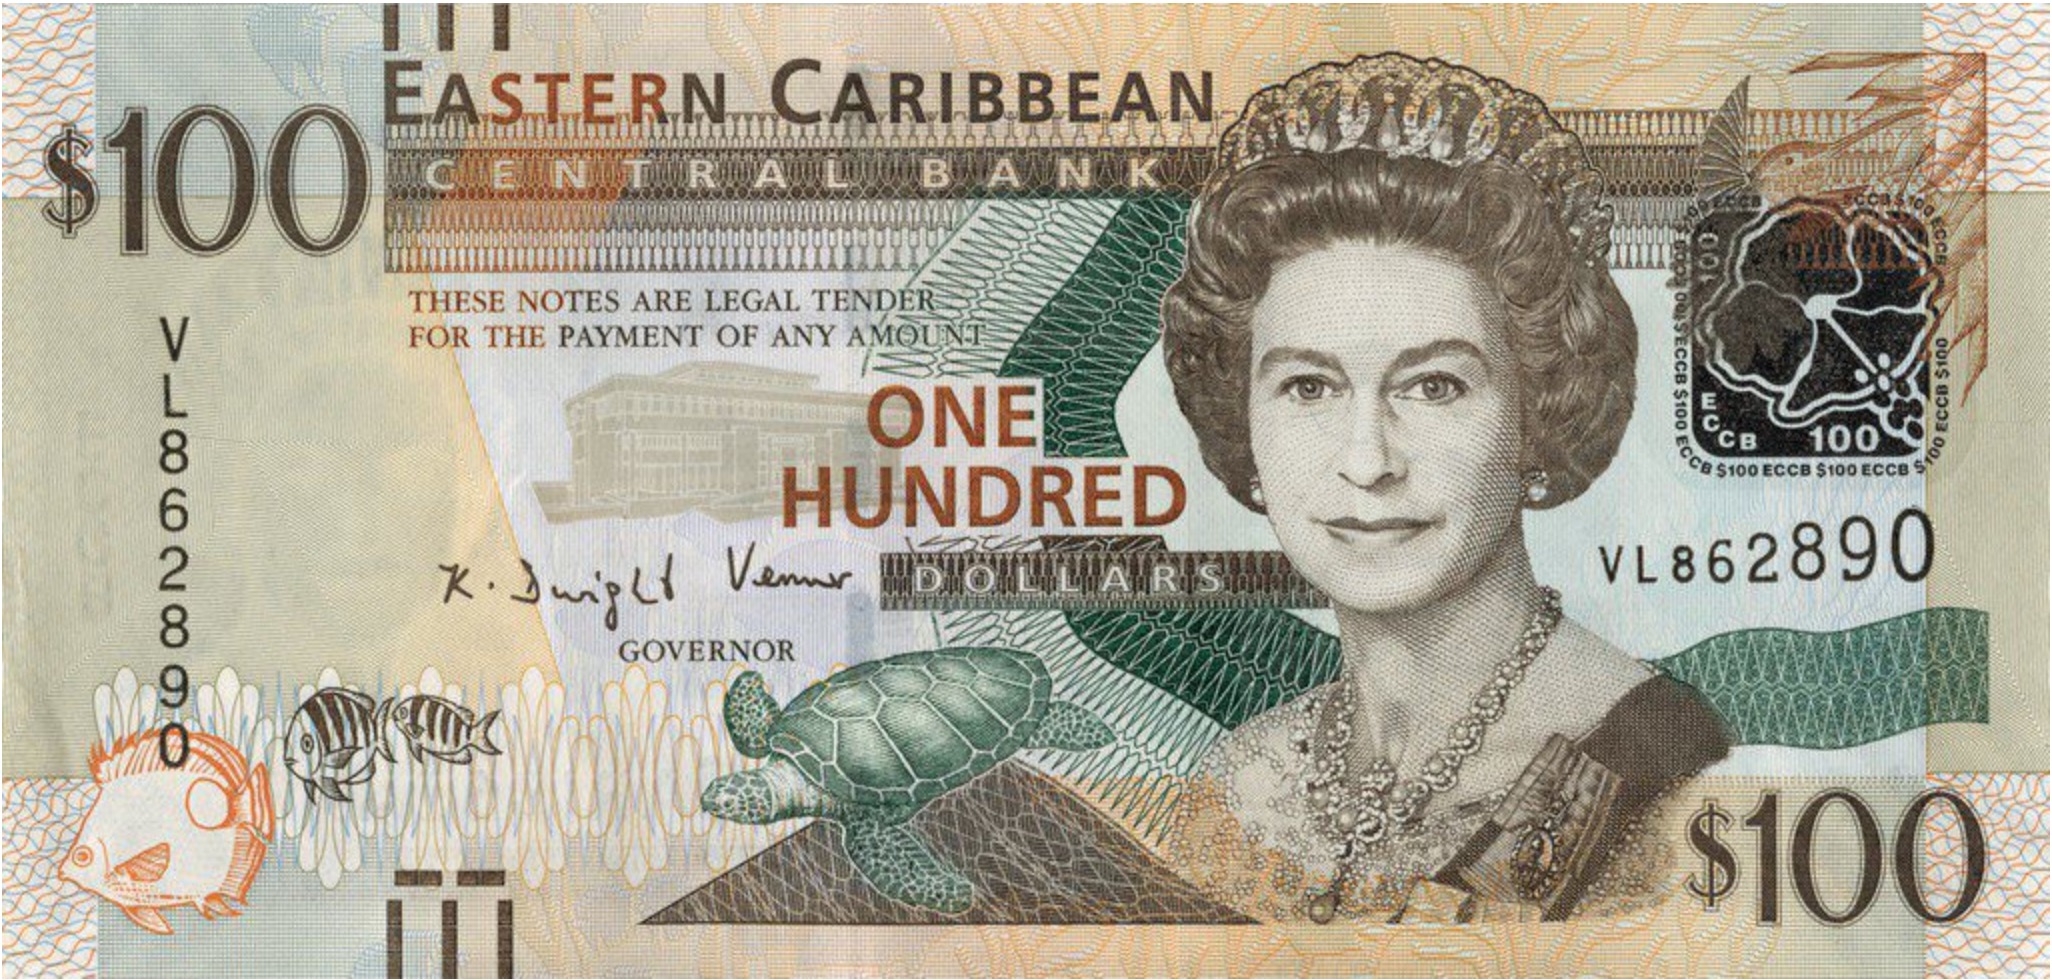 100 Eastern Caribbean dollars banknote series 2000 - Exchange yours